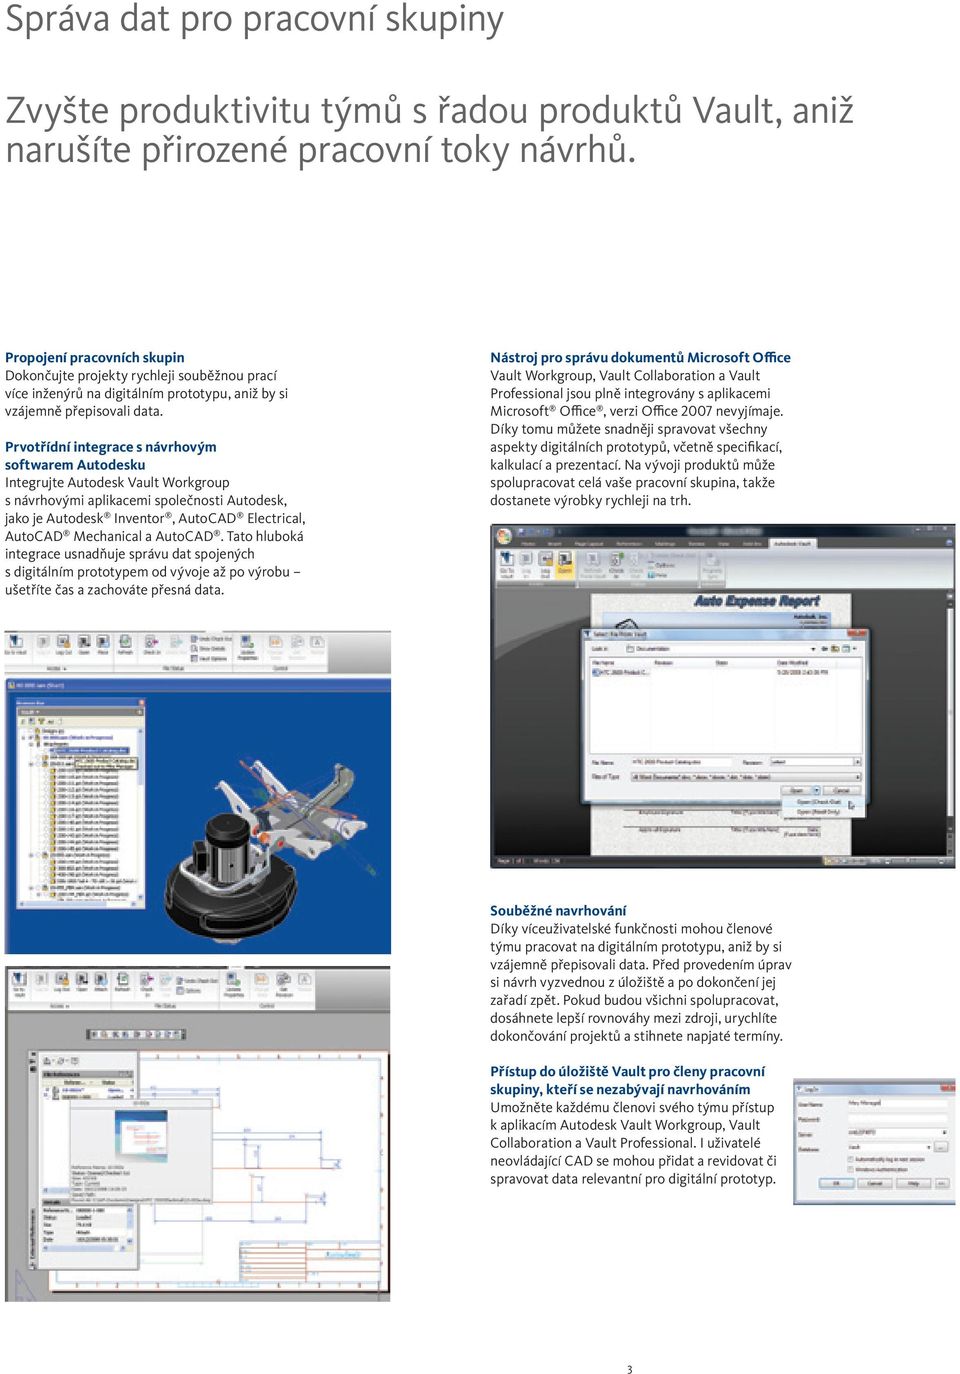 Prvotřídní integrace s návrhovým softwarem Autodesku Integrujte Autodesk Vault Workgroup s návrhovými aplikacemi společnosti Autodesk, jako je Autodesk Inventor, AutoCAD Electrical, AutoCAD